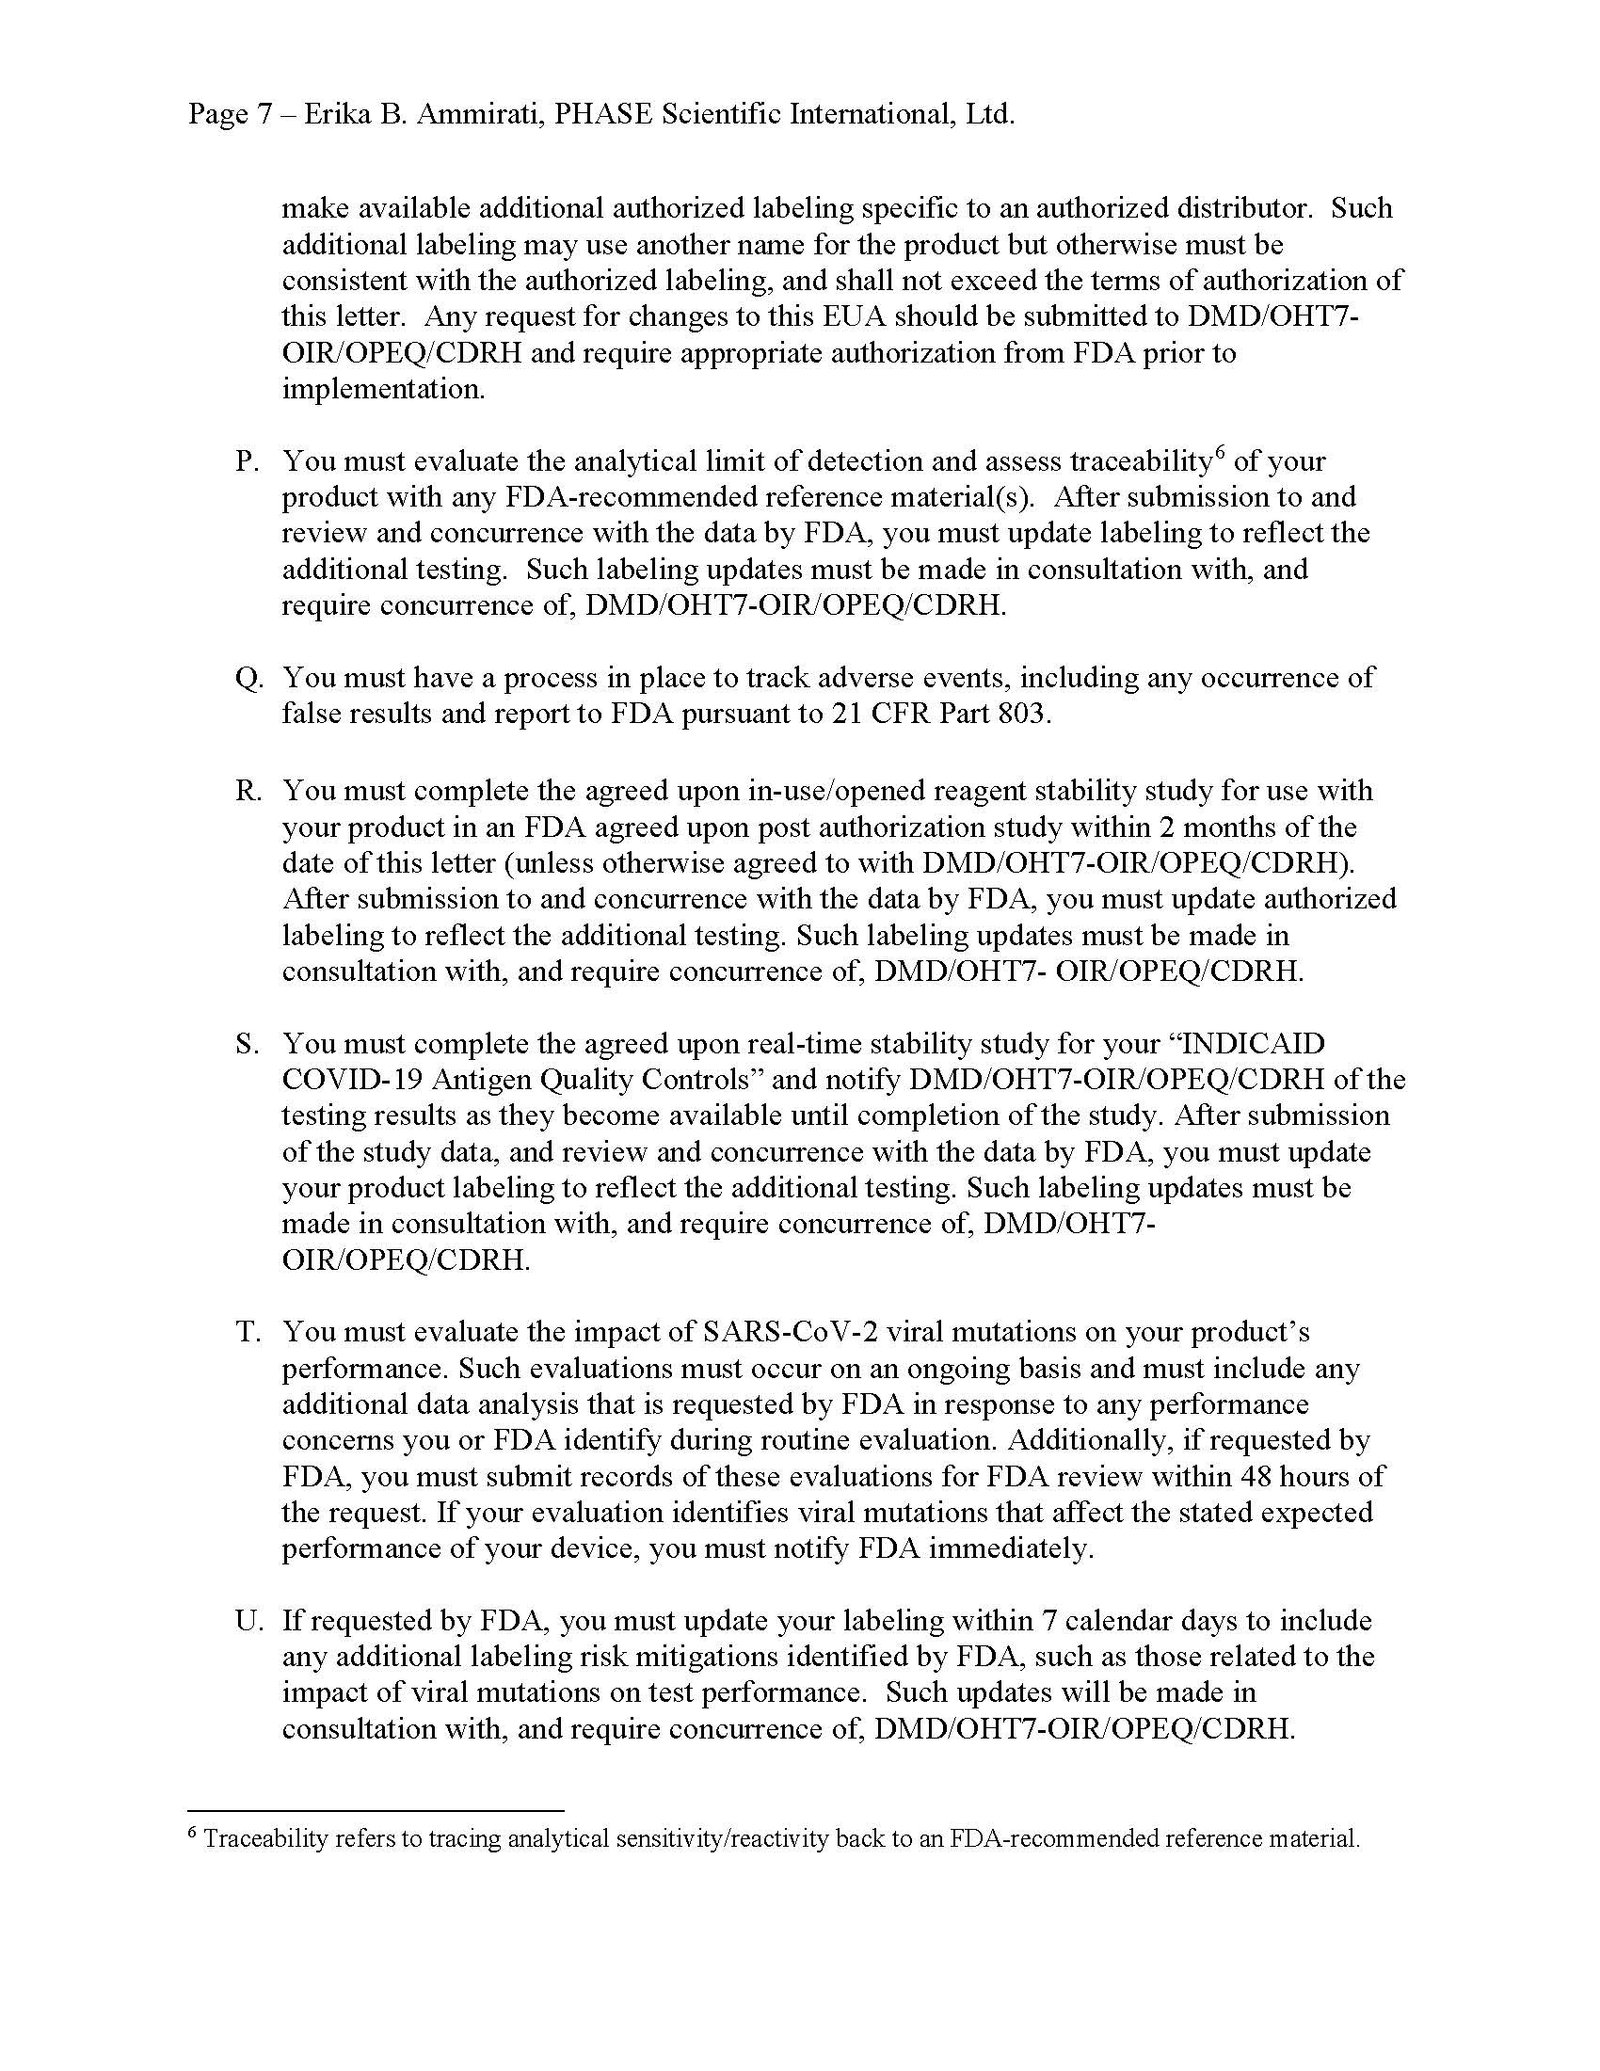 Indicaid FDA EUA Page 7